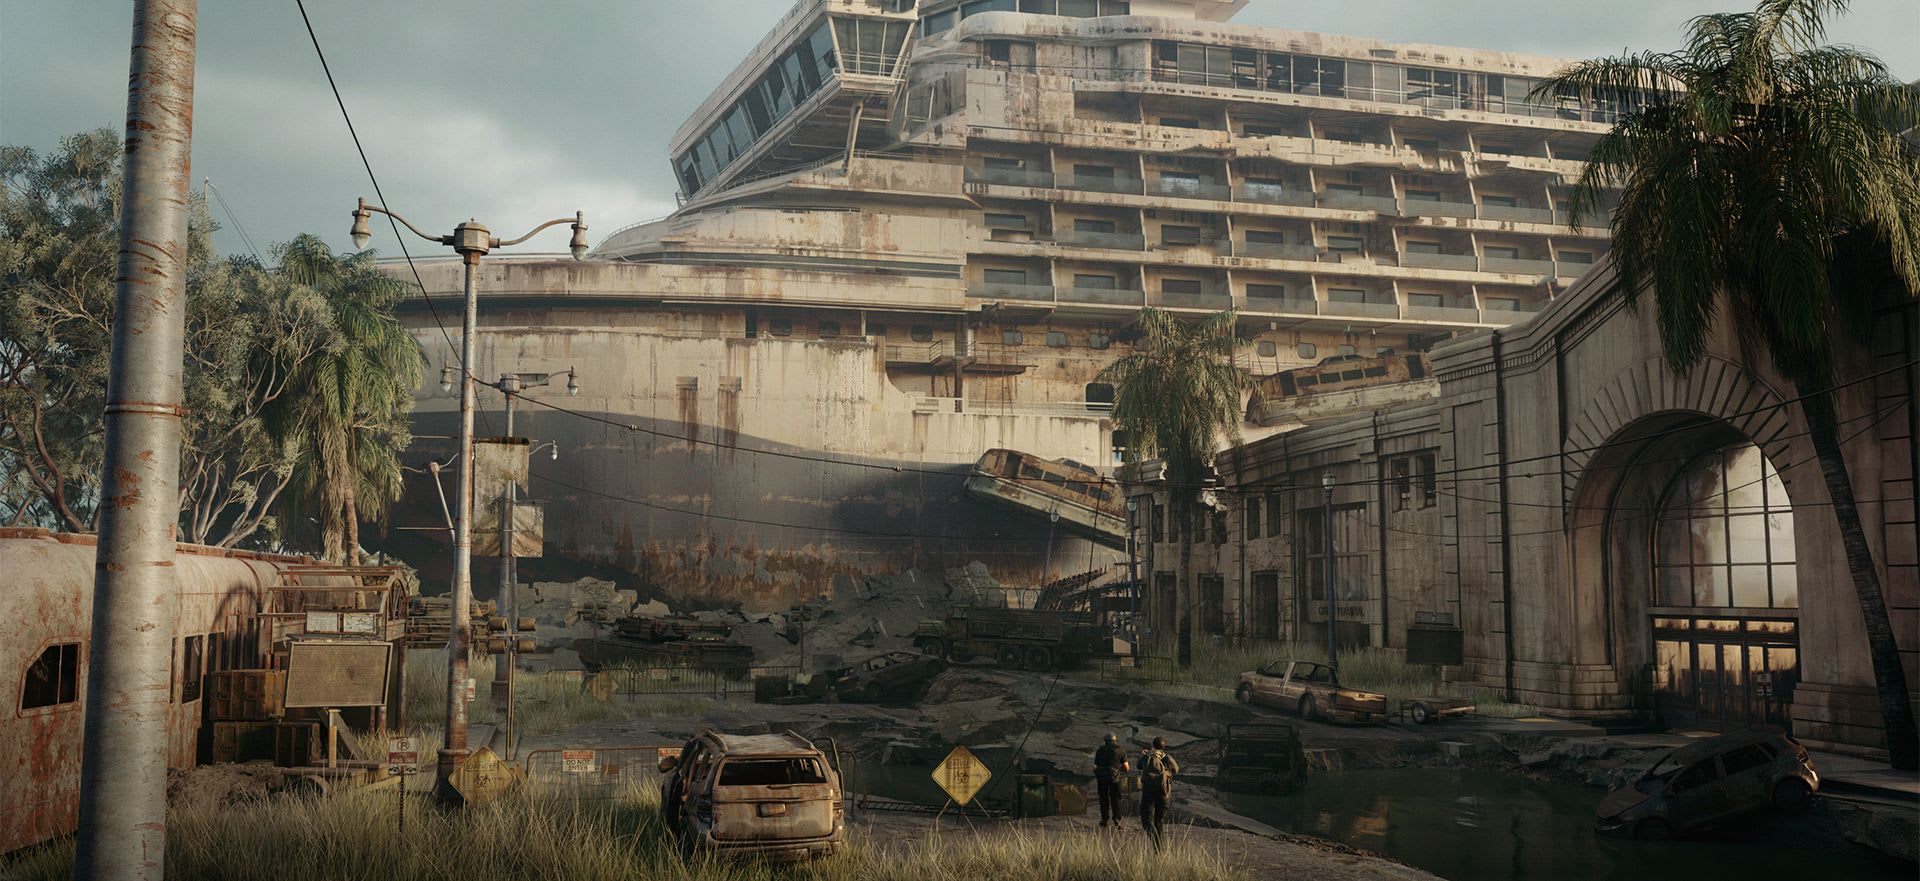 První snímek chystané multiplayerové hry The Last of Us